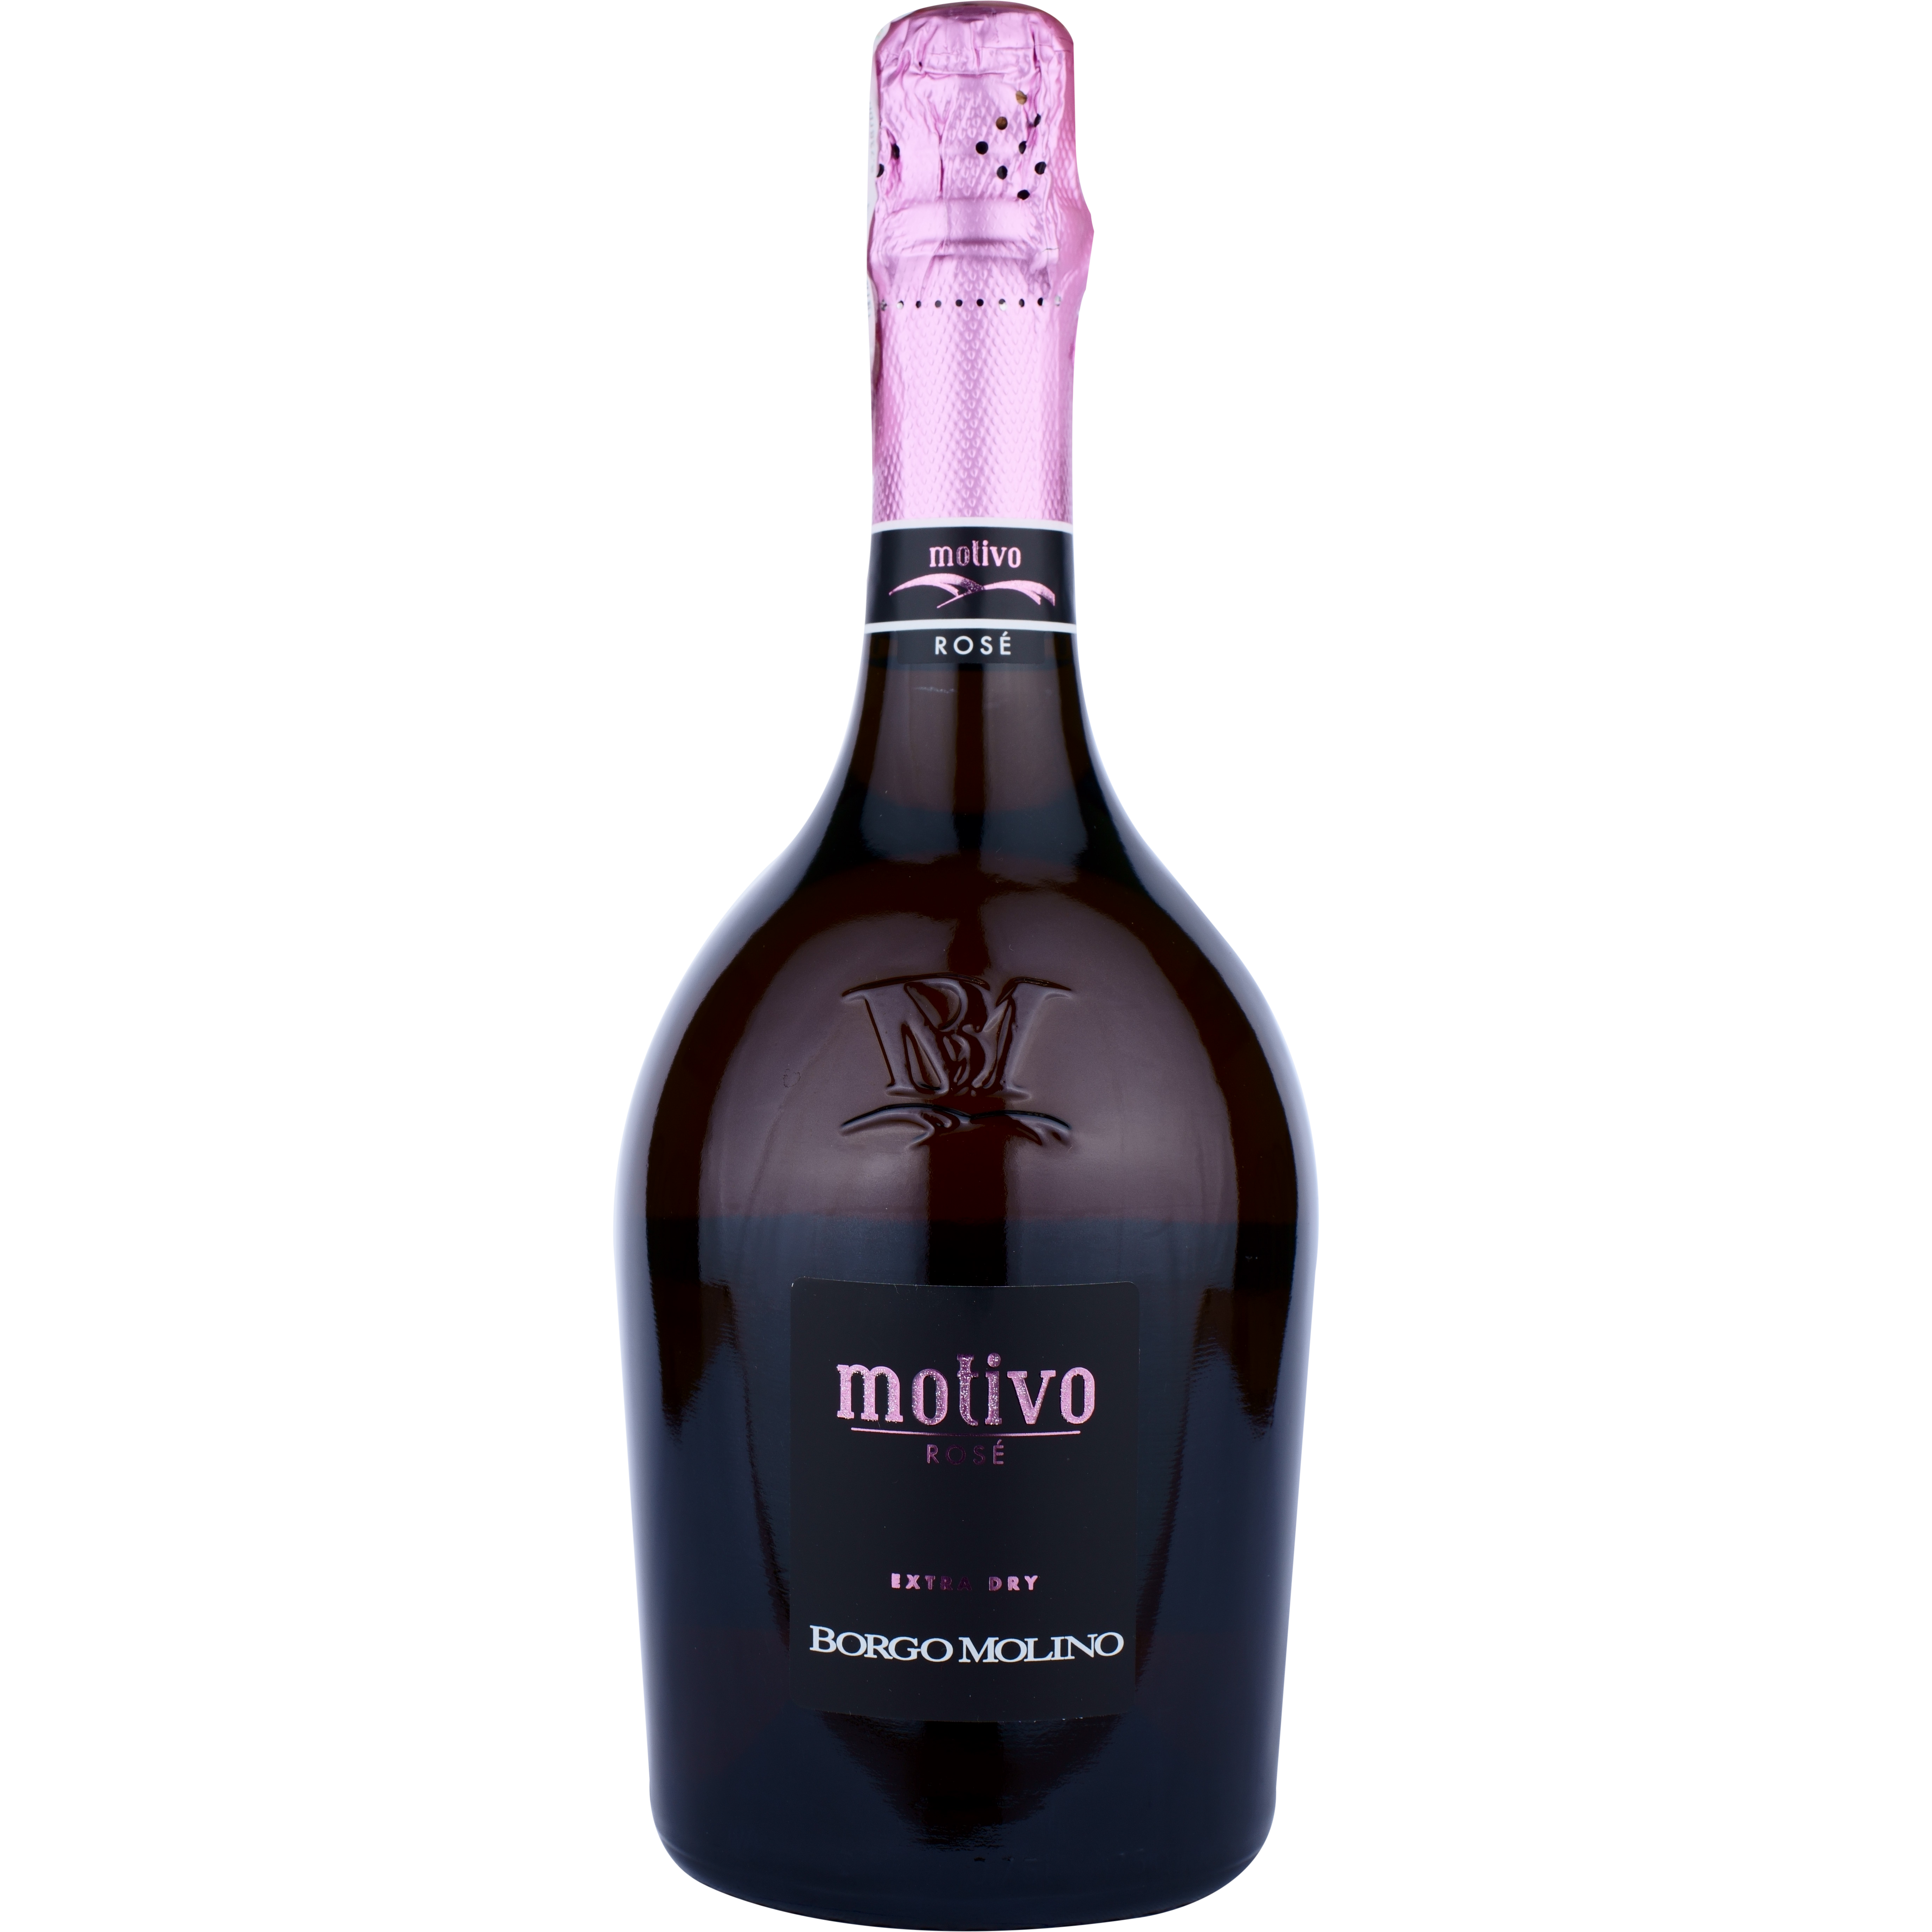 Игристое вино Borgo Molino Motivo Rose Spumante Extra Dry IGT, розовое, экстра драй, 0,75 л - фото 1